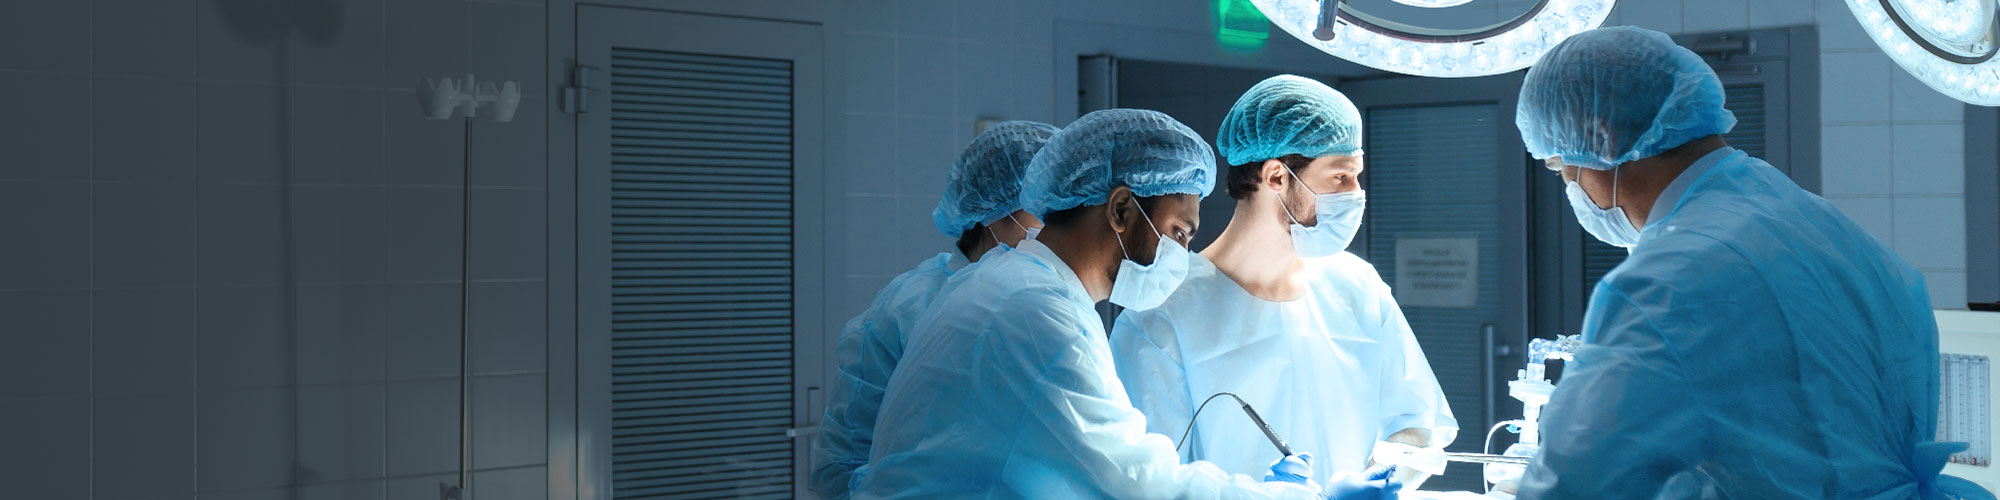 Vier Personen in einem OP-Saal während einer Operation